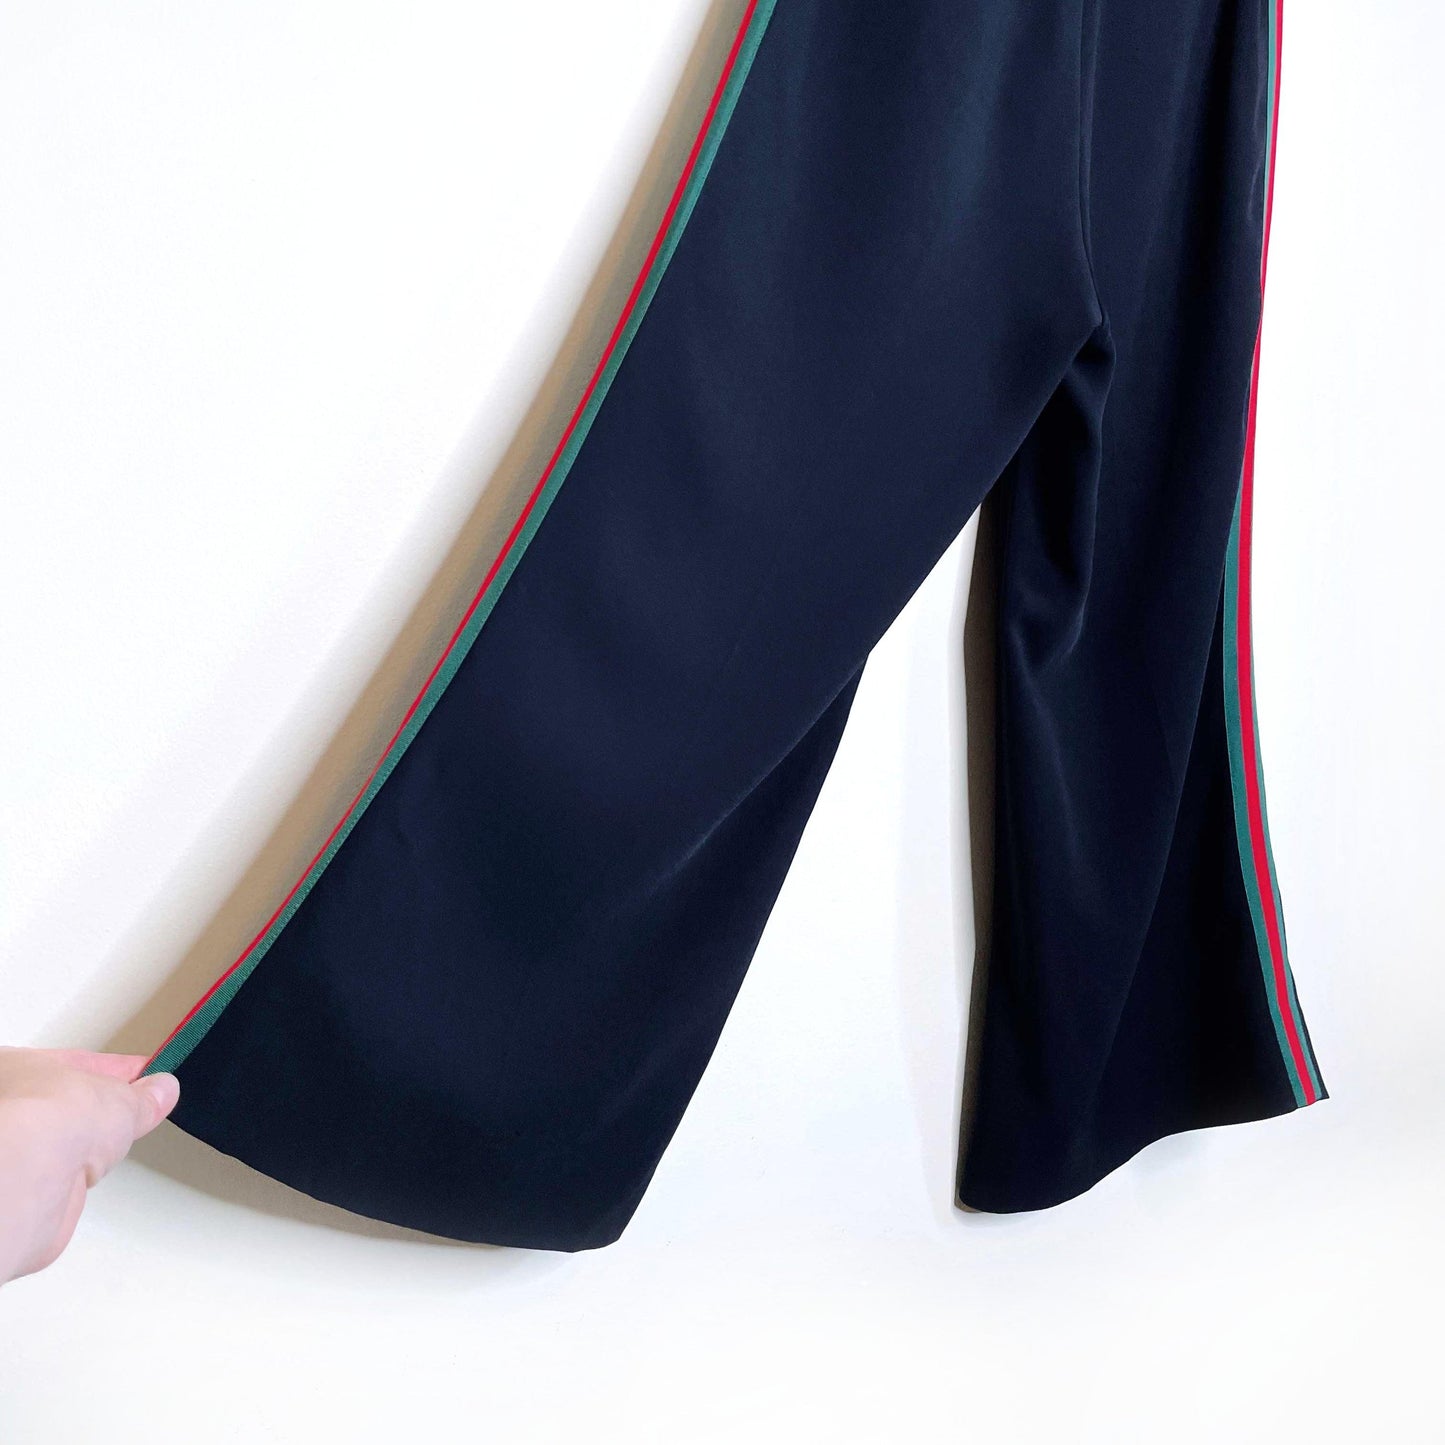 gucci black high rise web-striped bootcut pants - size 38